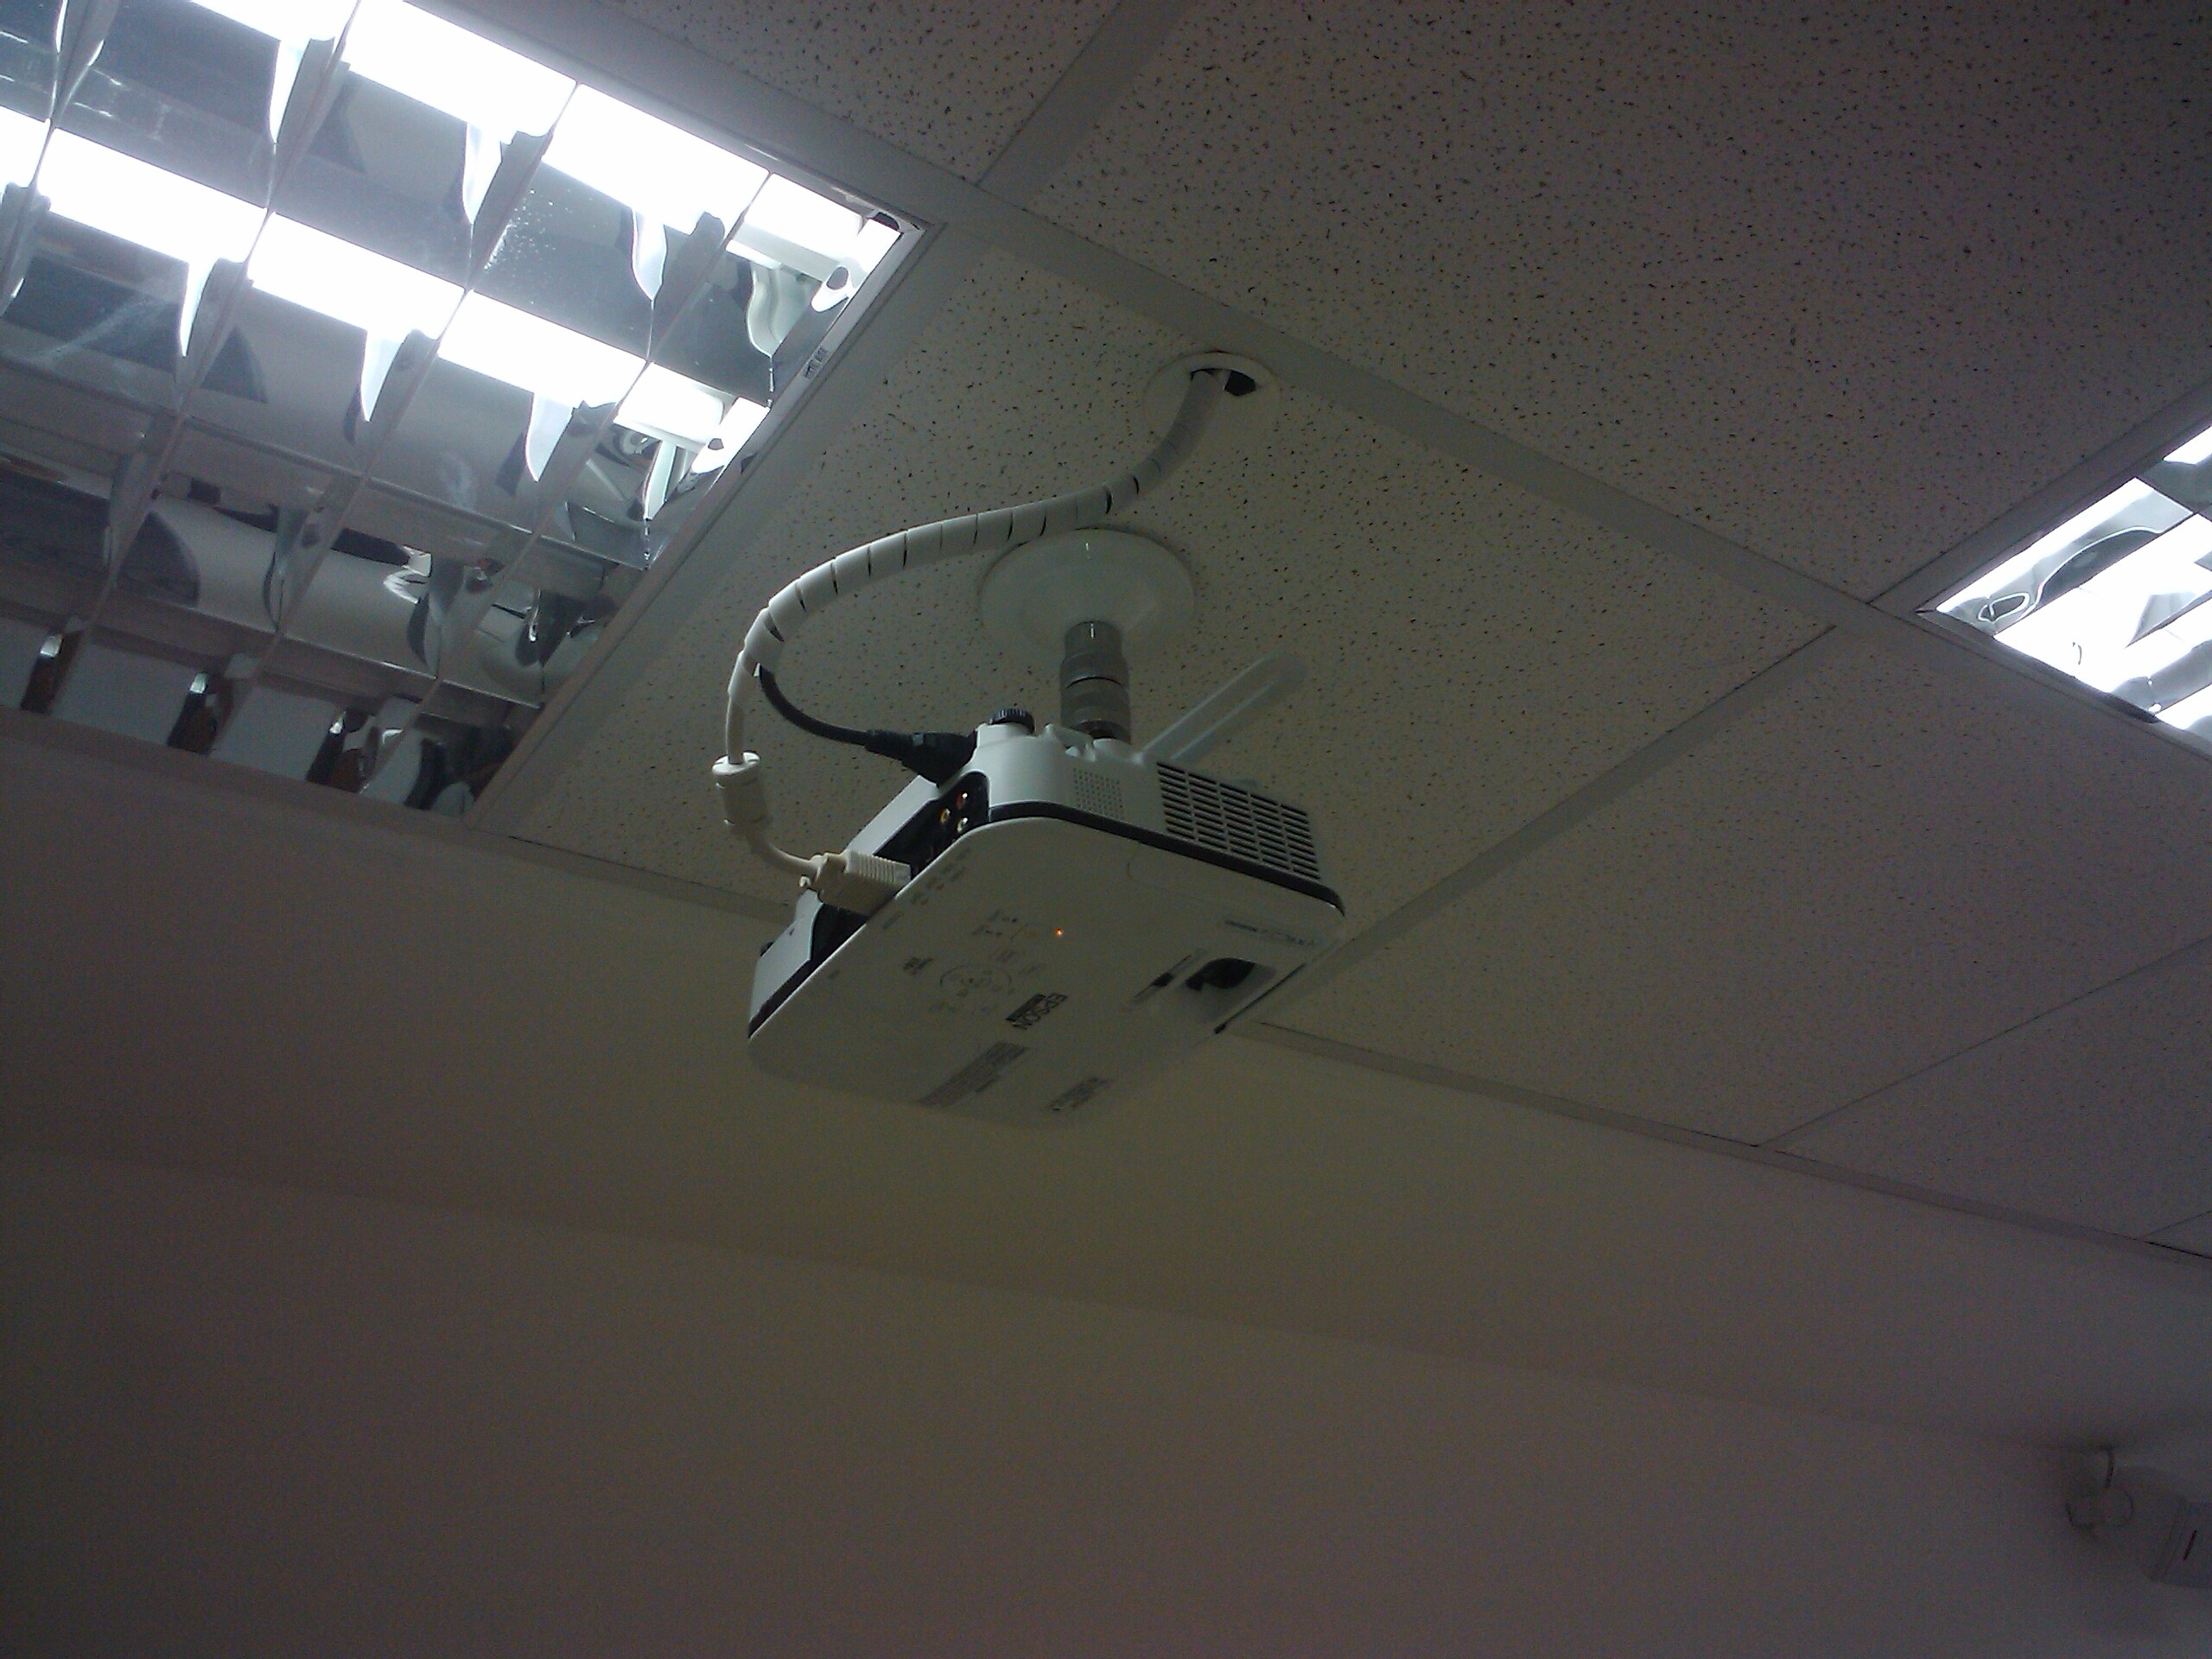 Instalação de projetores em são paulo